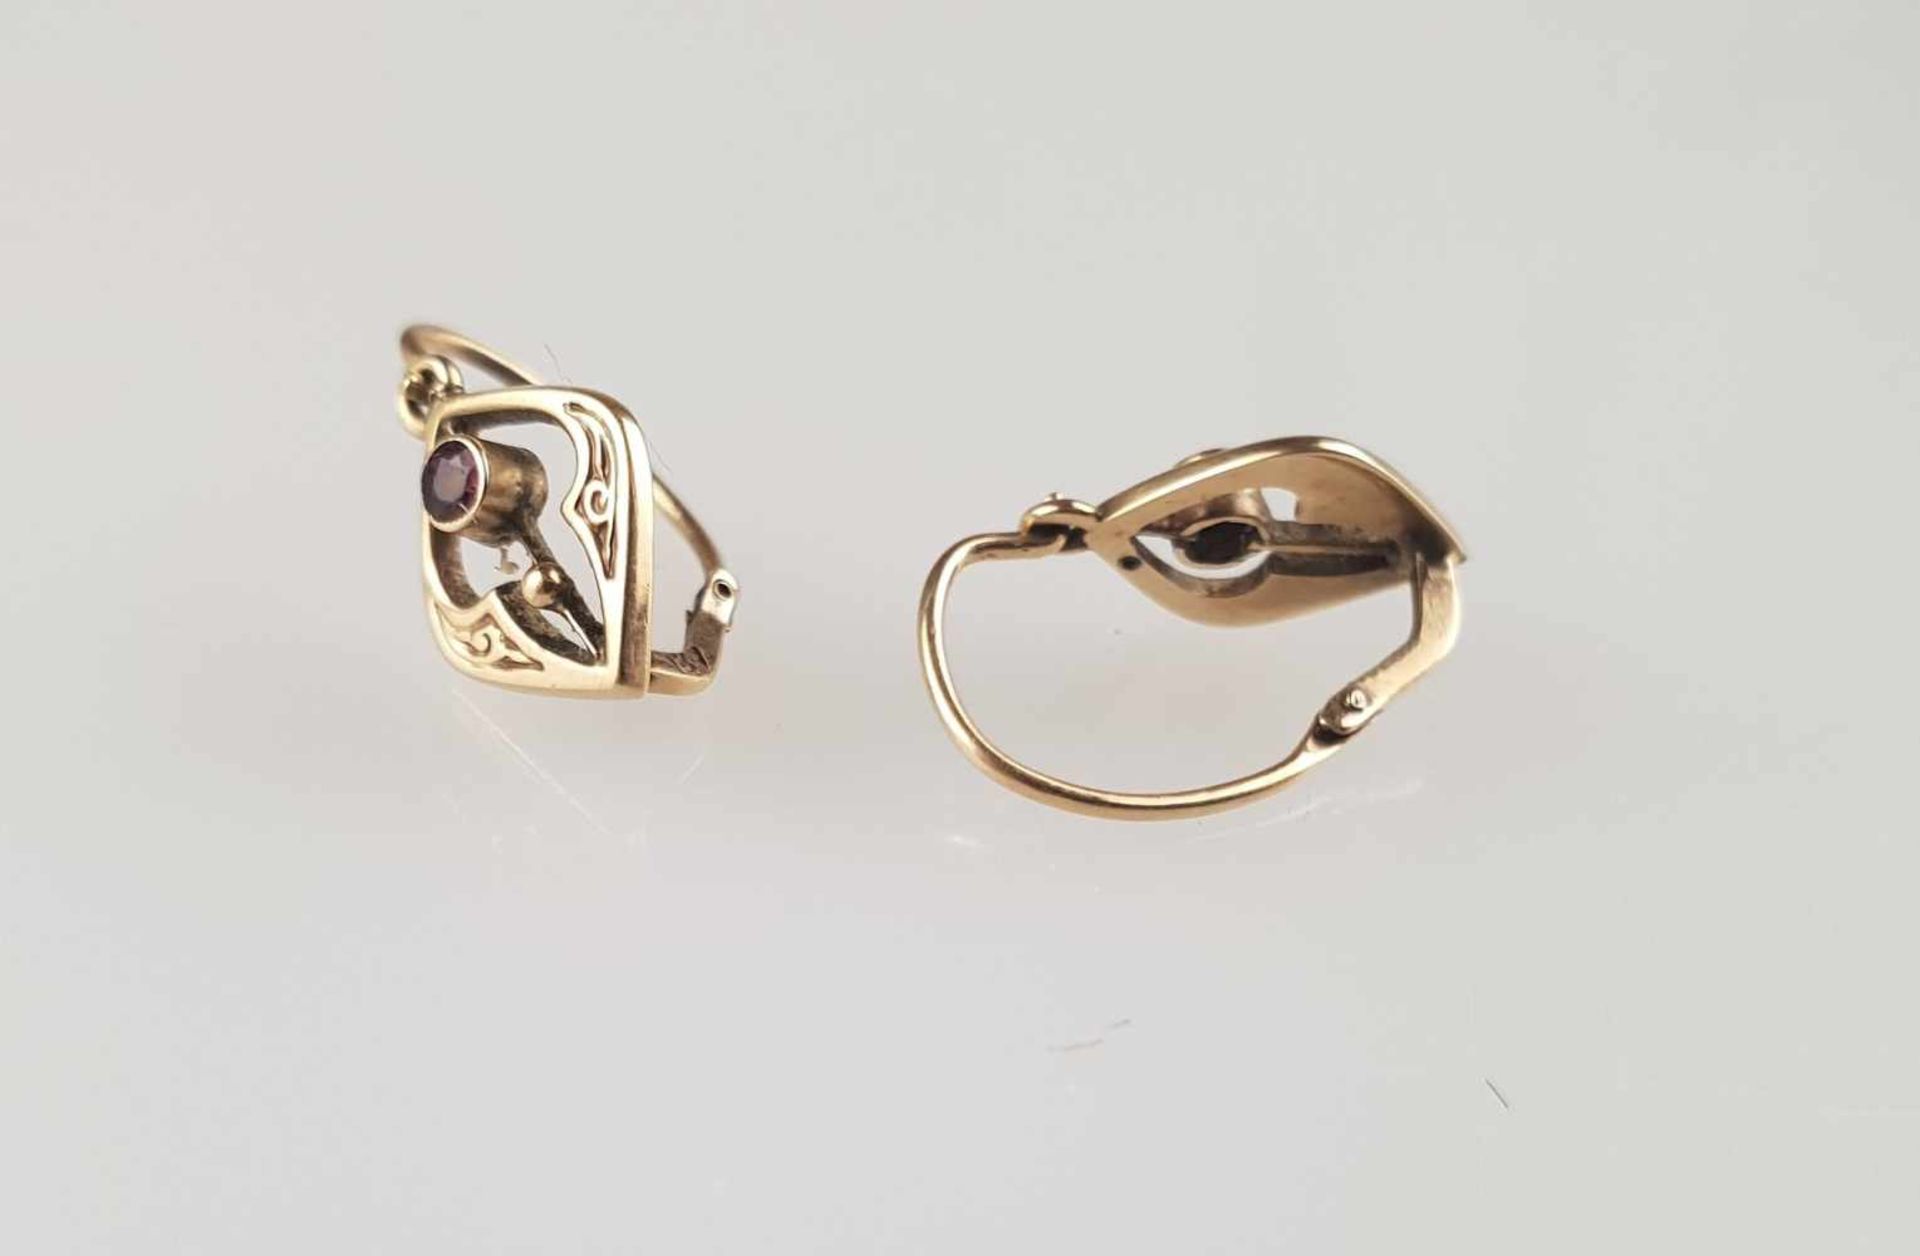 Zwei Paar Biedermeier-Ohrringe - Gold 14 Karat, punziert 585, Steinbesatz: kleine Opalcabochons - Bild 2 aus 3